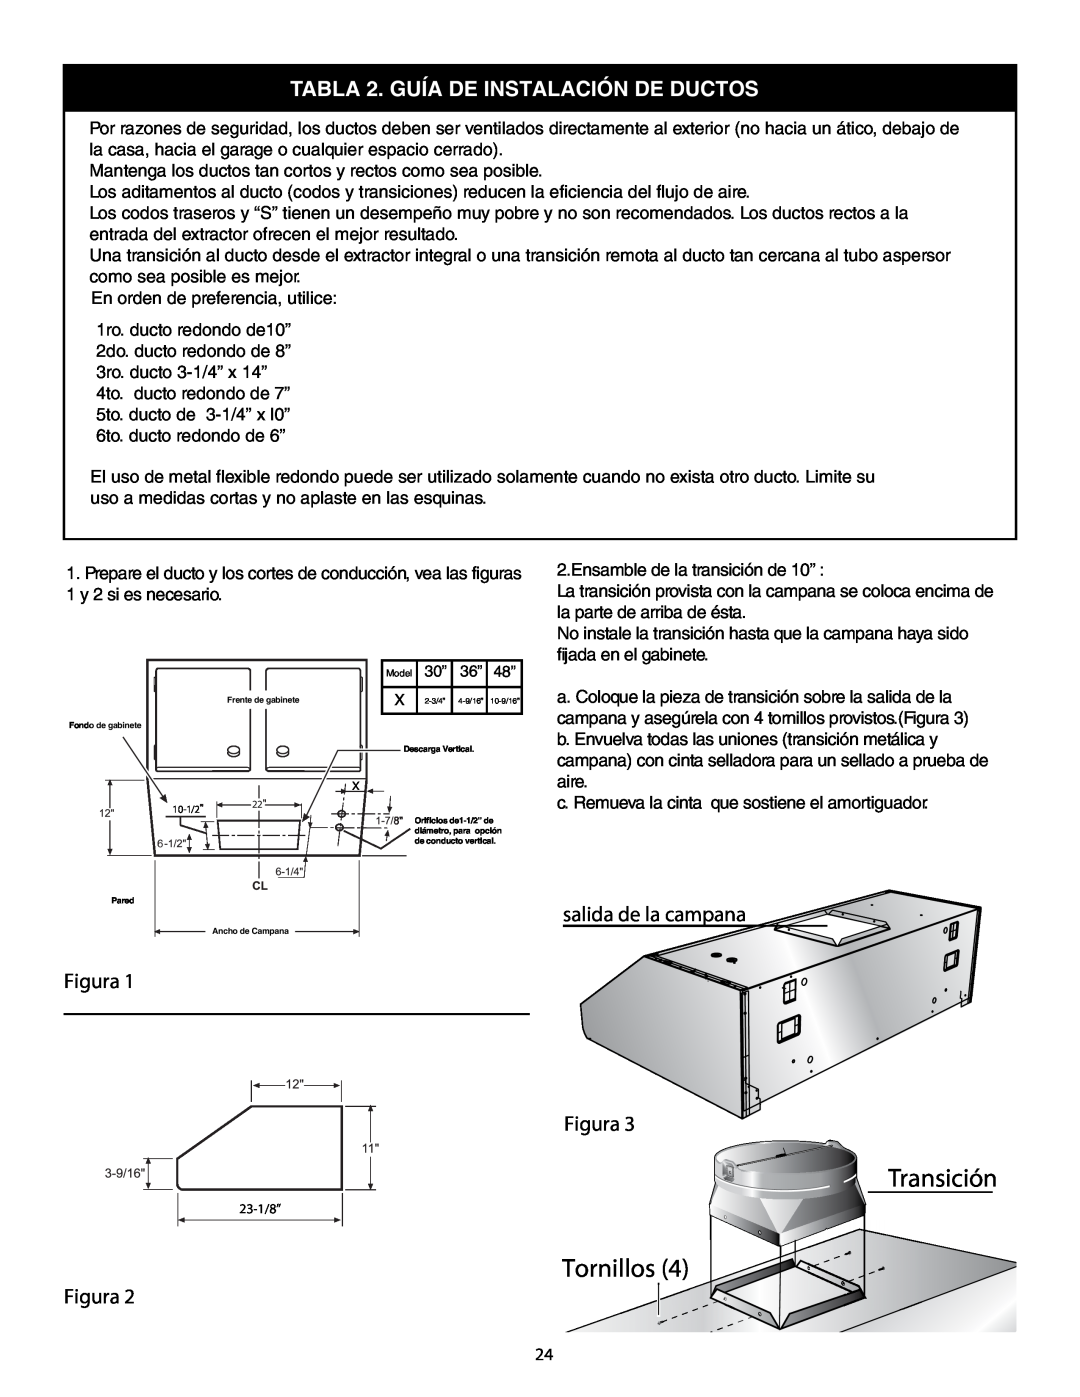 Thermador HPWB48, HPWB30, HPWB36 installation manual Transición Tornillos, TABLA 2. GUÍA DE INSTALACIÓN DE DUCTOS 